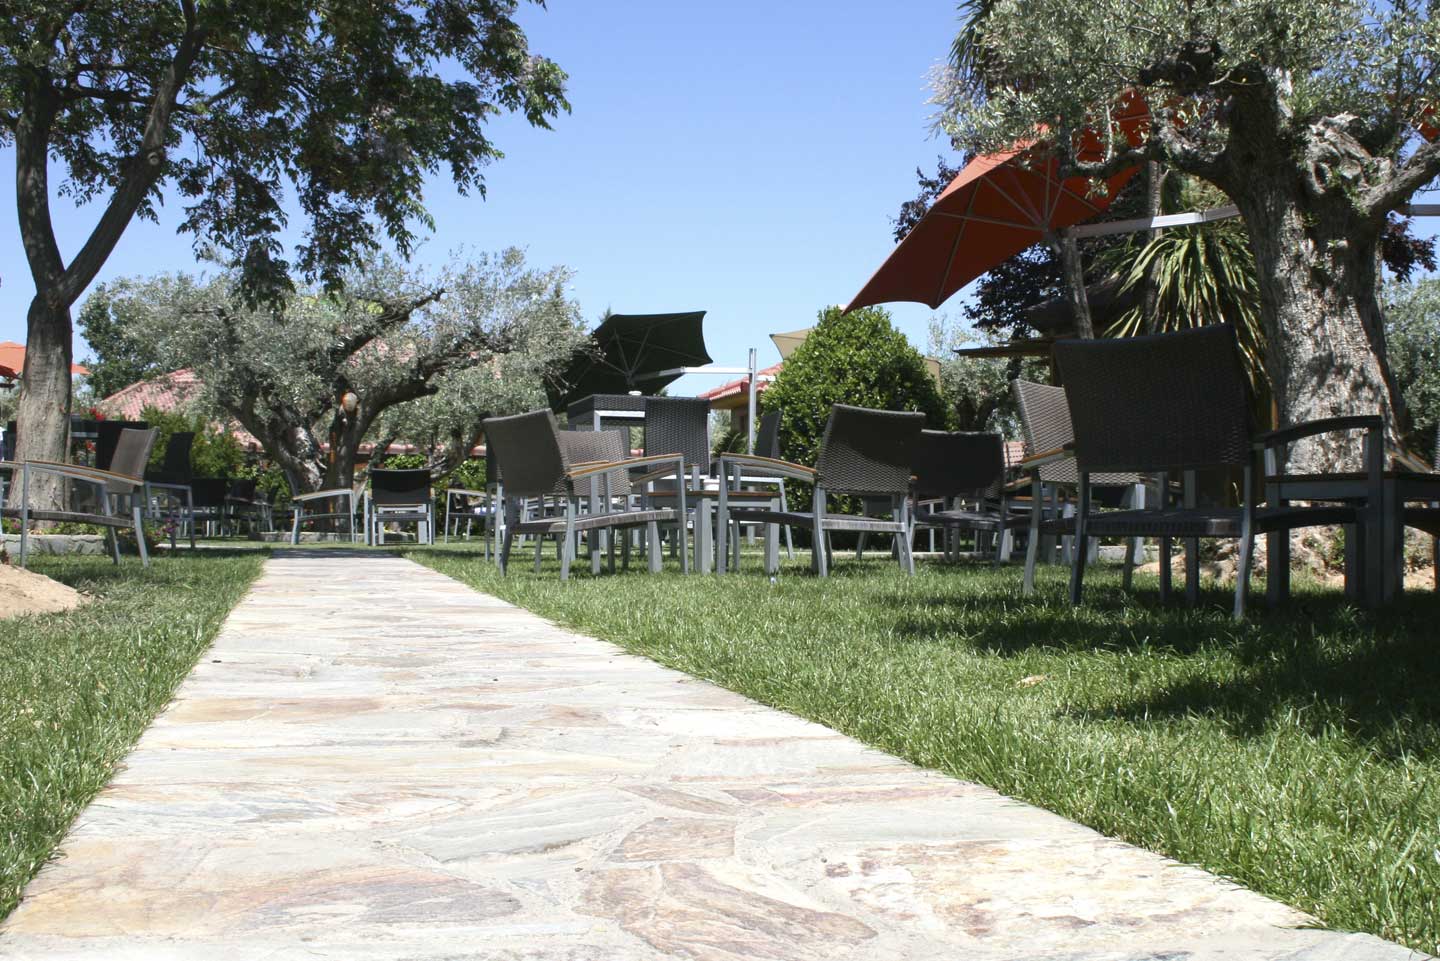 Terraza Lounge - Naturaleza y gastronomia al aire libre.